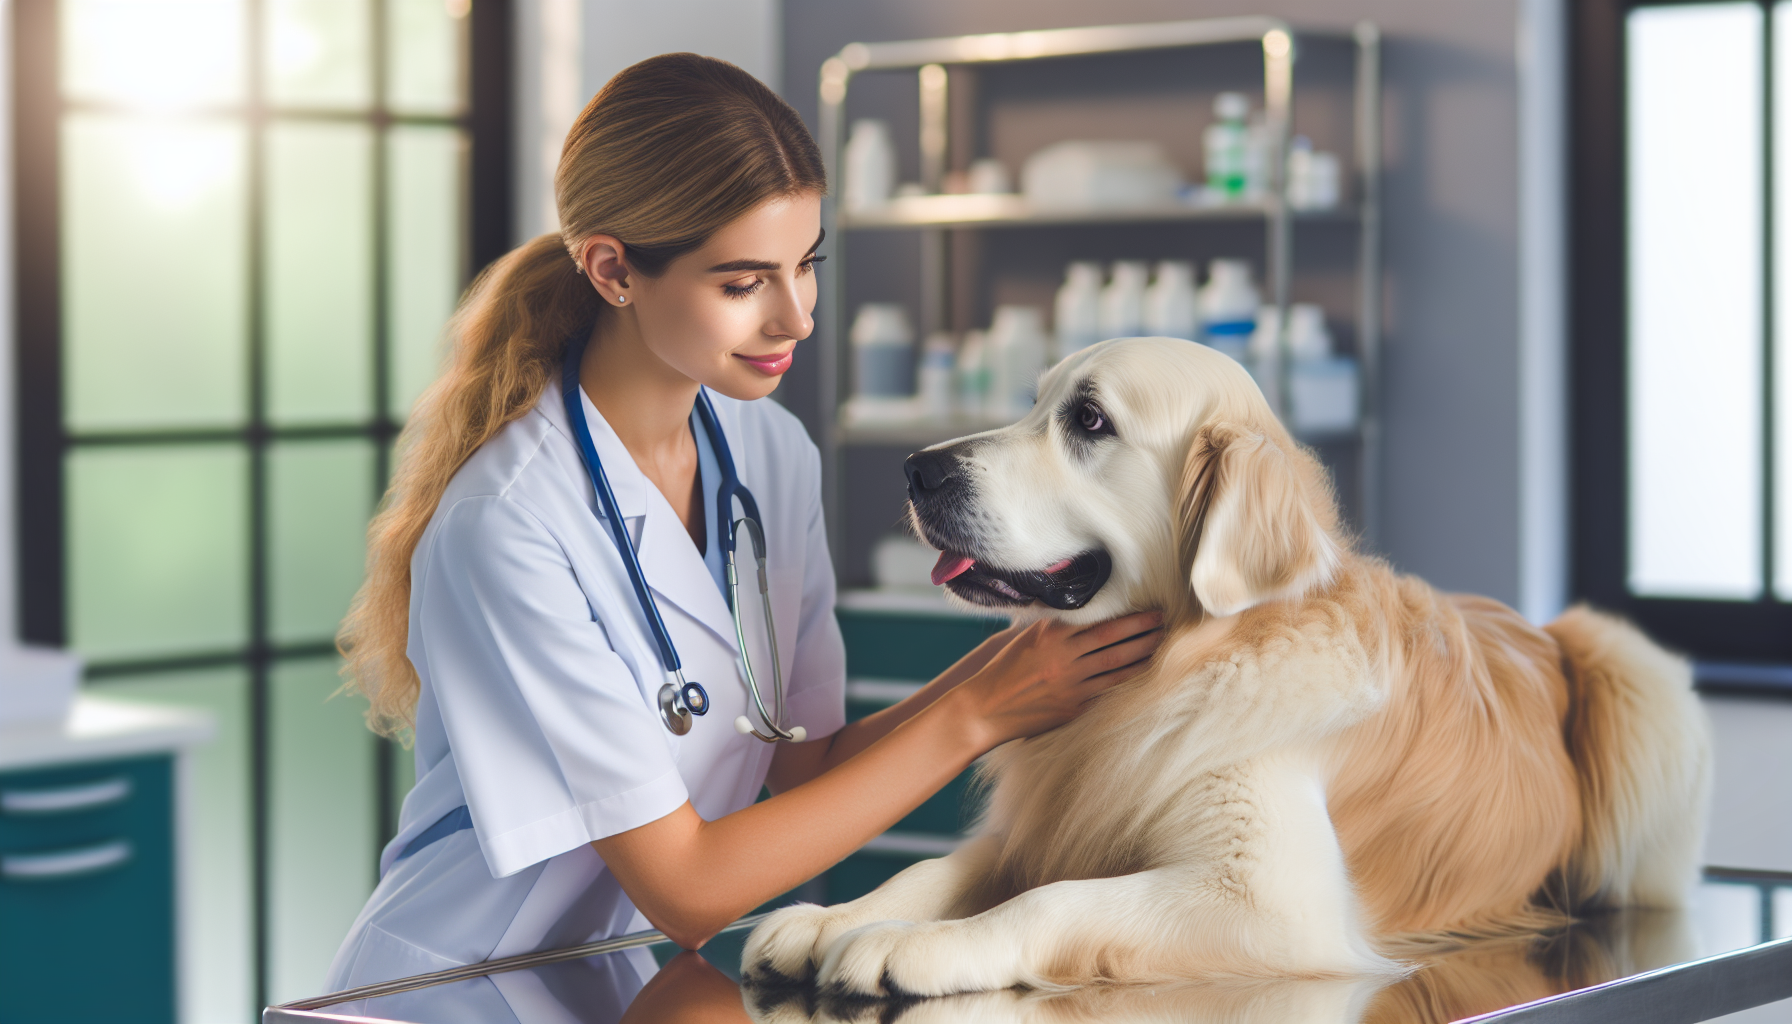 Illustration of a veterinarian examining a dog